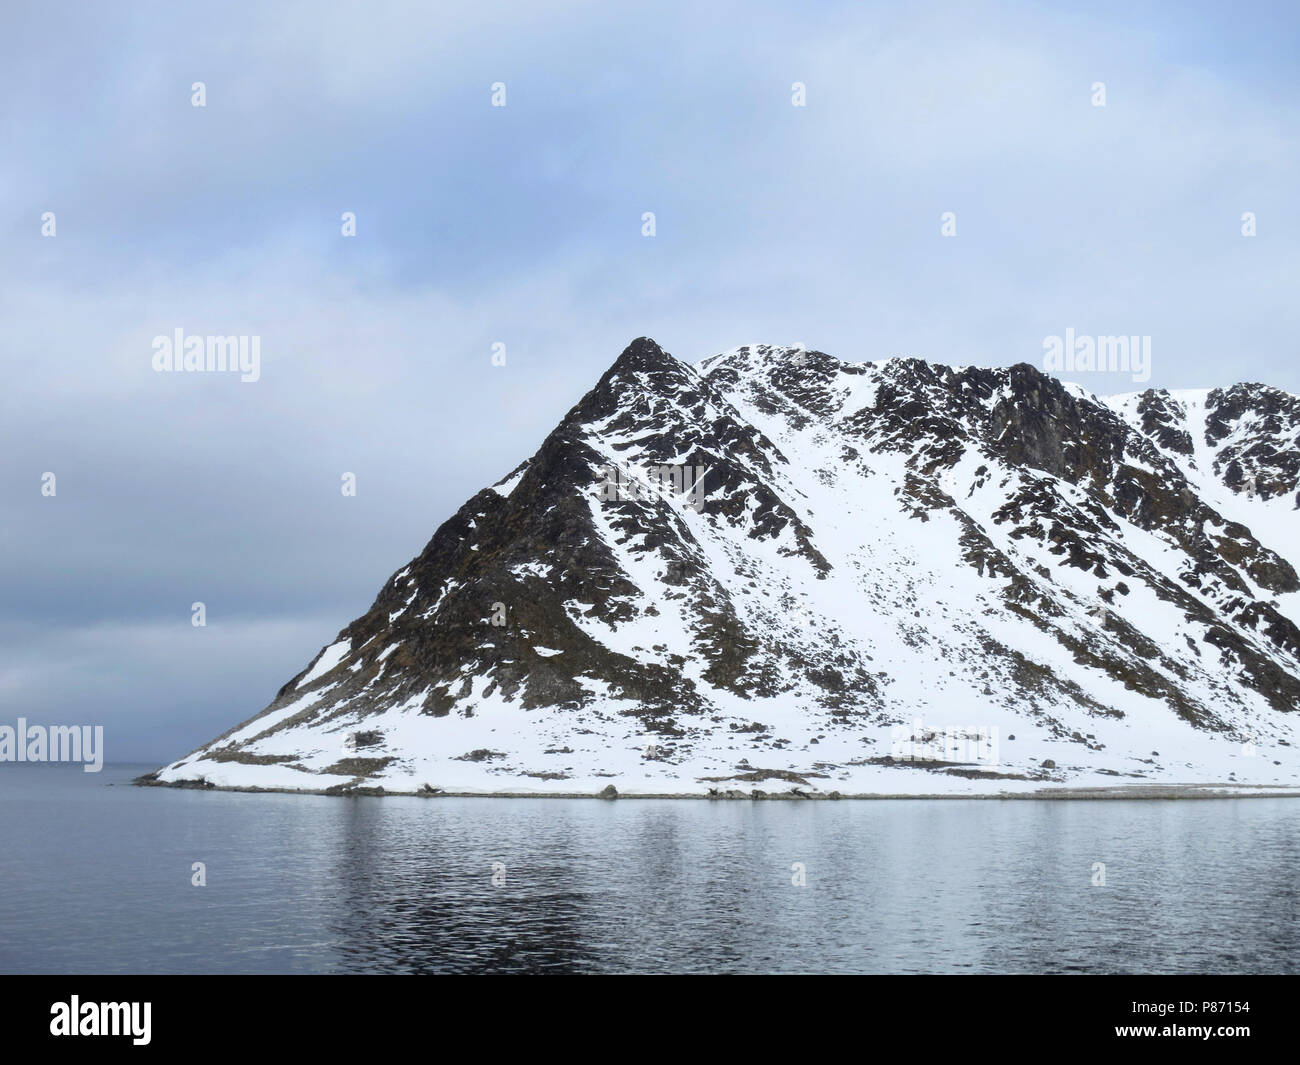 Fugelsang, Spitsbergen Banque D'Images